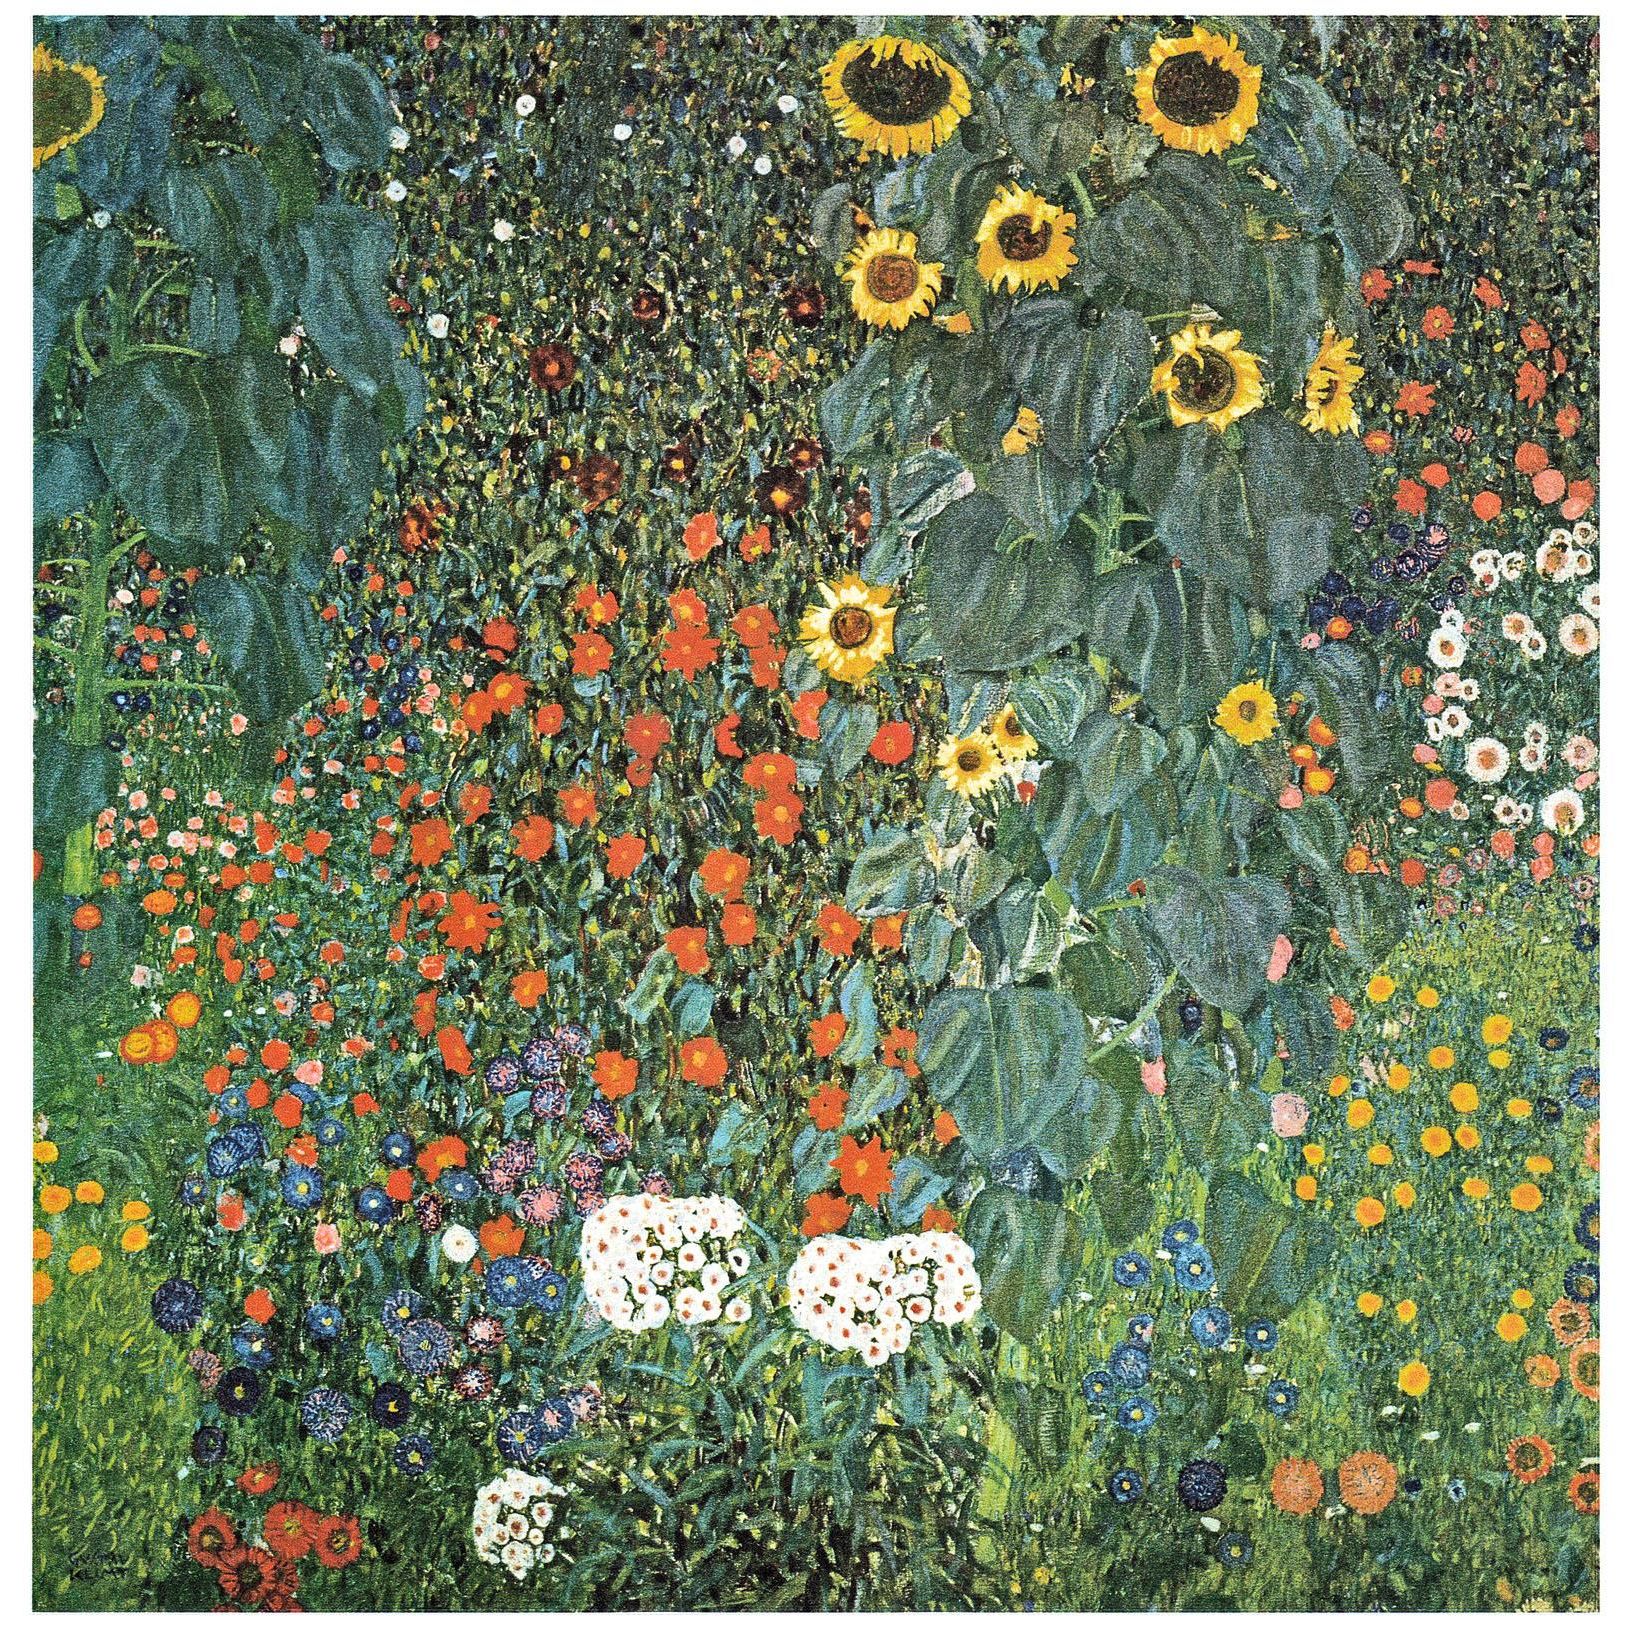 Gustav Klimt. Bauerngarten mit Sonnenblumen. 1907. Belvedere Wien